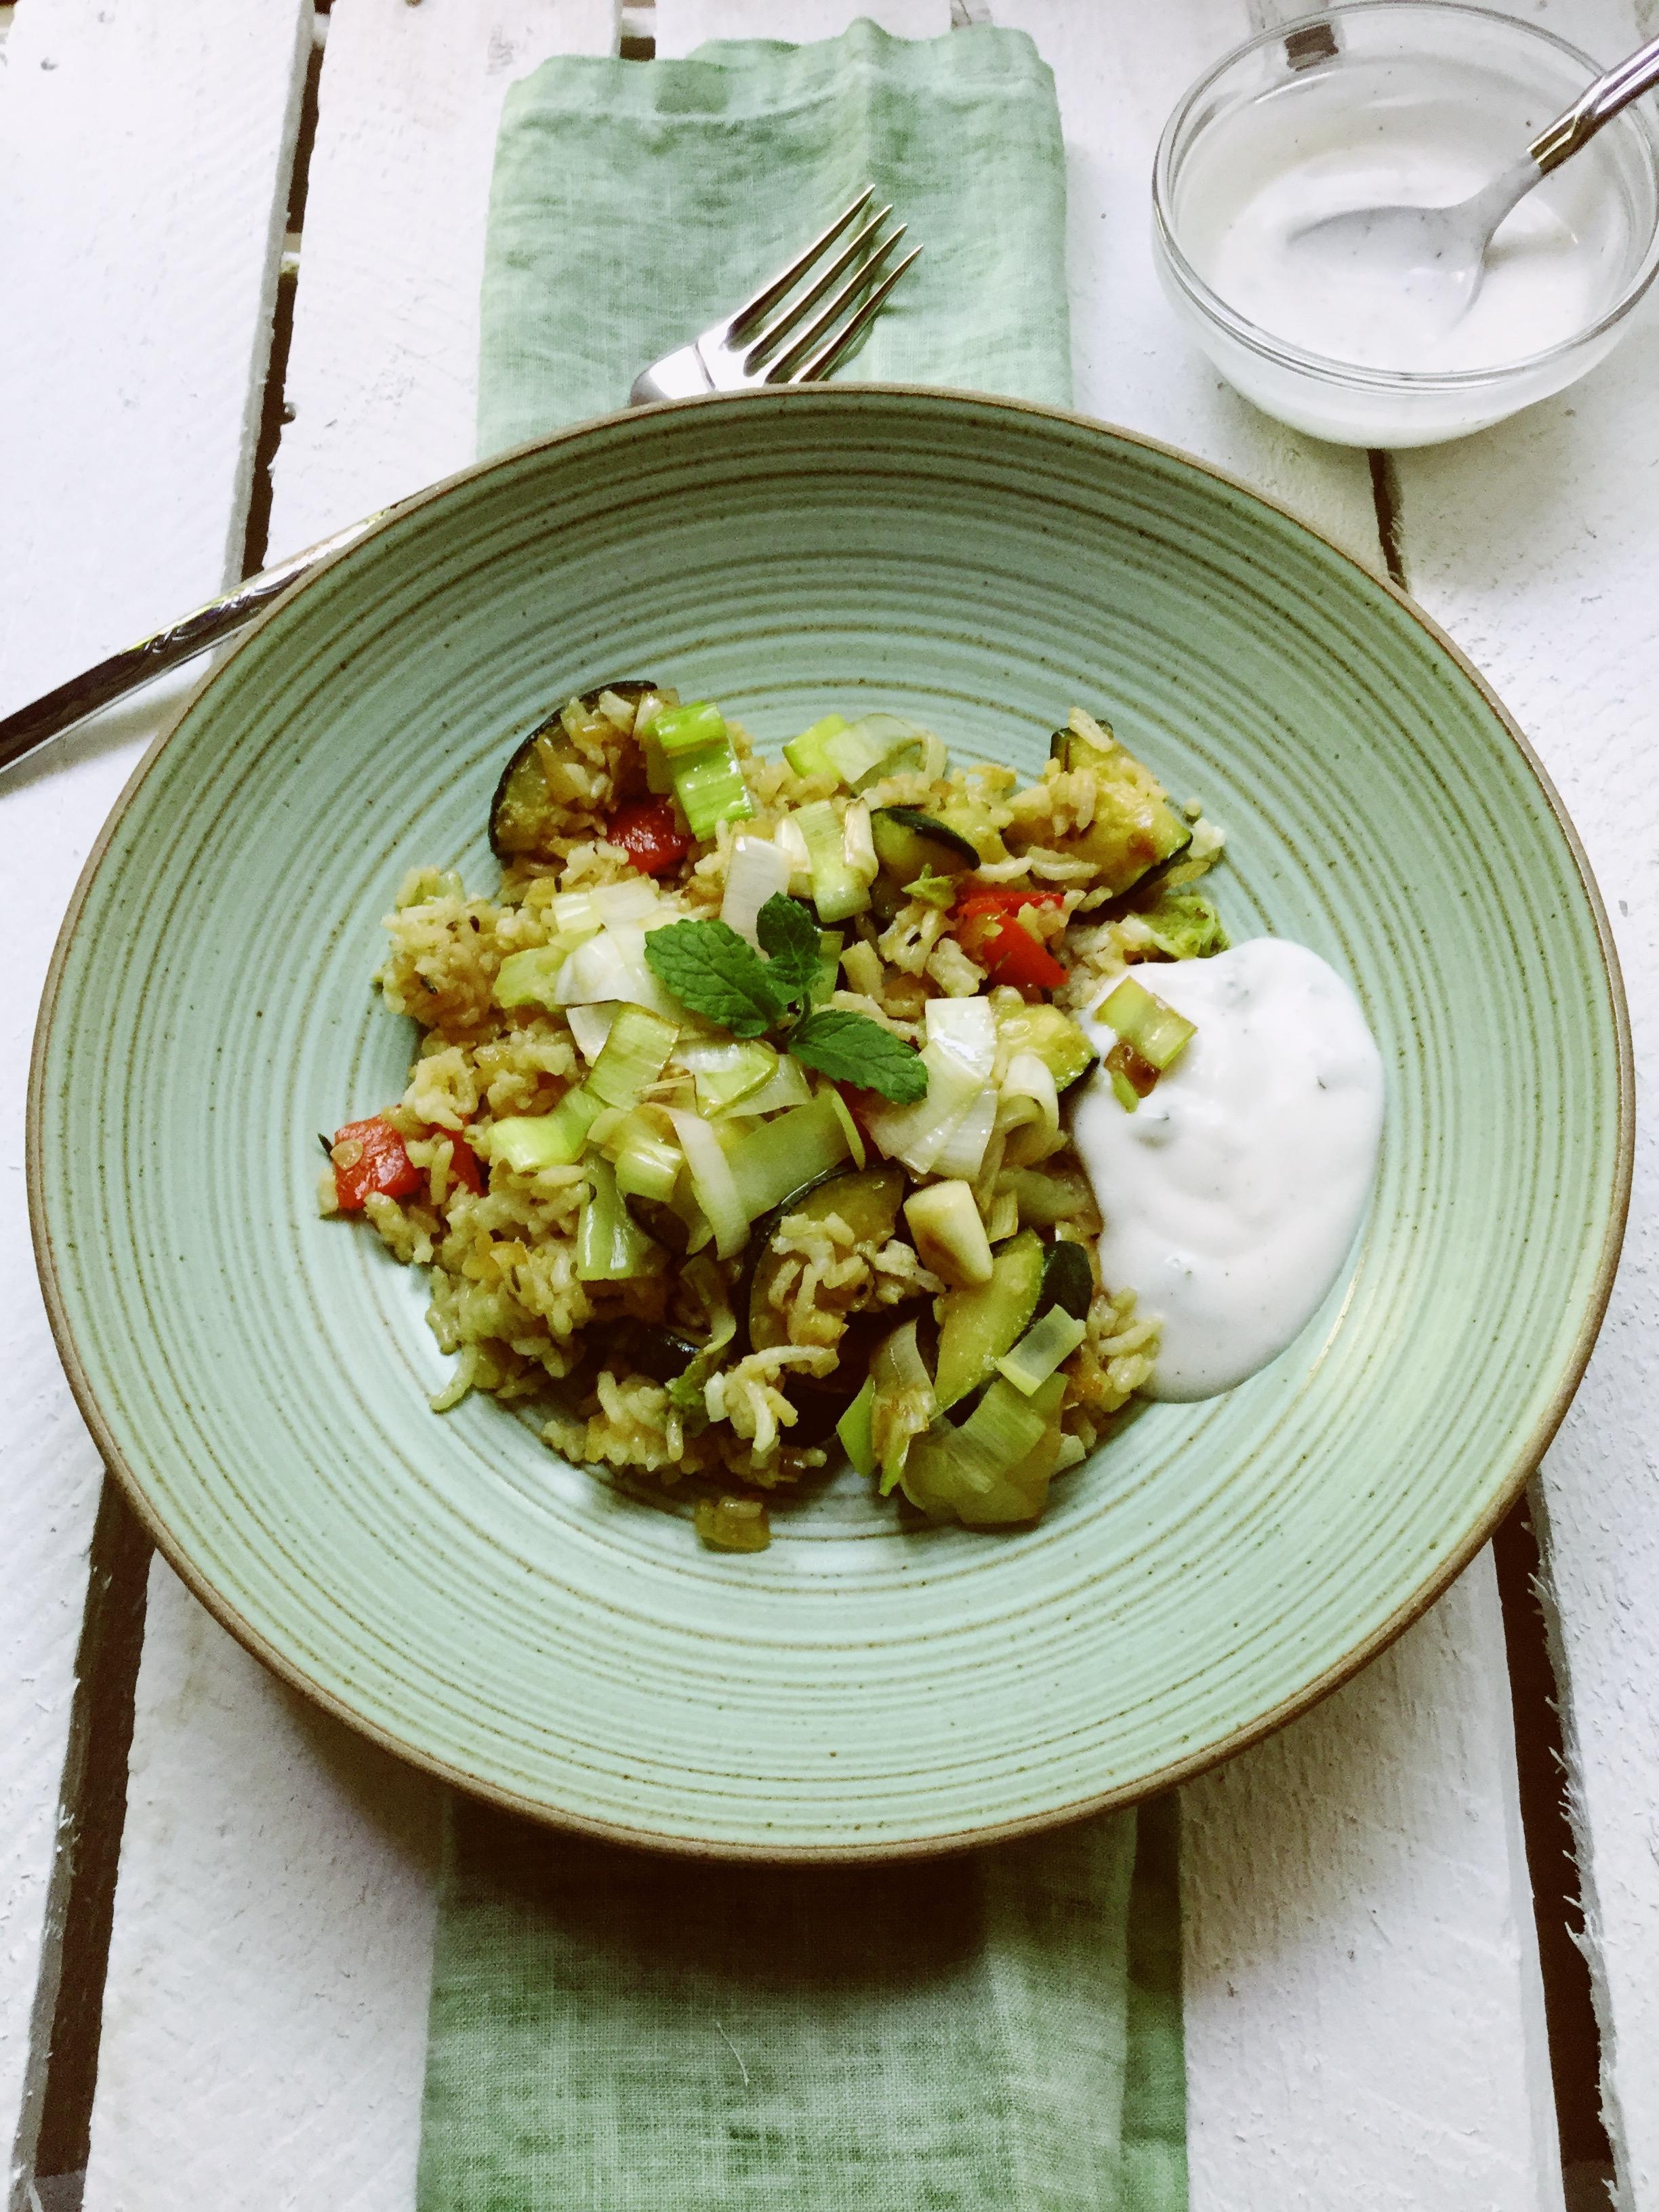 Leckere Reis-Gemüse-Pfanne mit Minze-Dip 😋Rezept auf dem Blog #food #foodlove #vegan #vegetarisch 